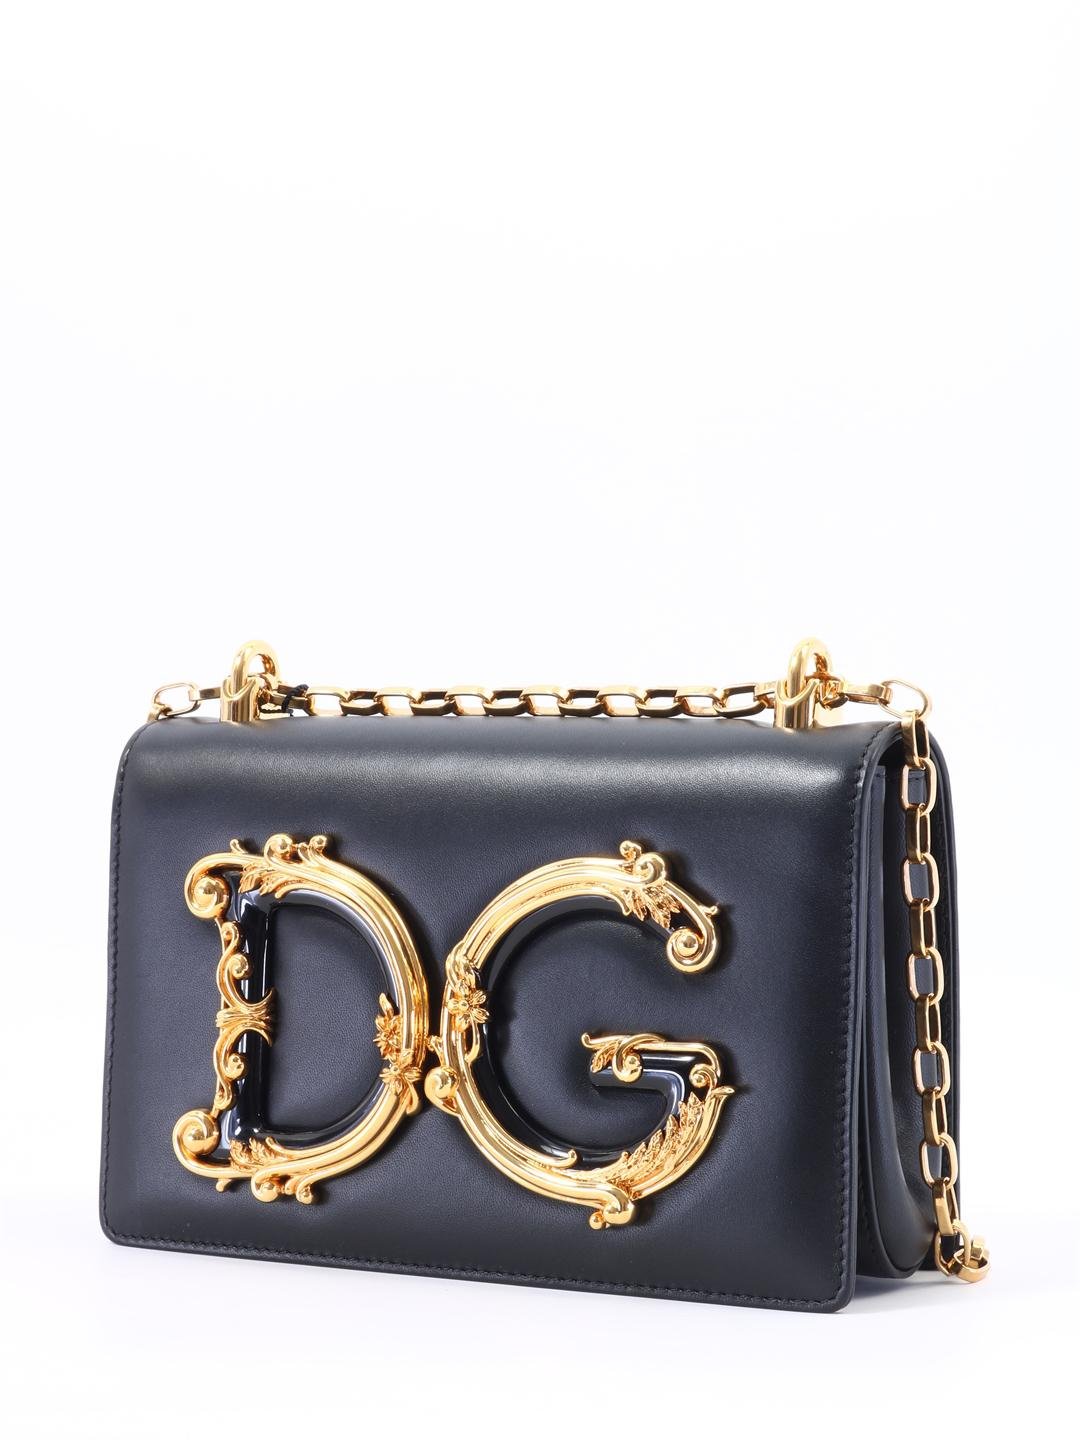 Dolce & Gabbana Dg Girls Leather Shoulder Bag in Black | Lyst